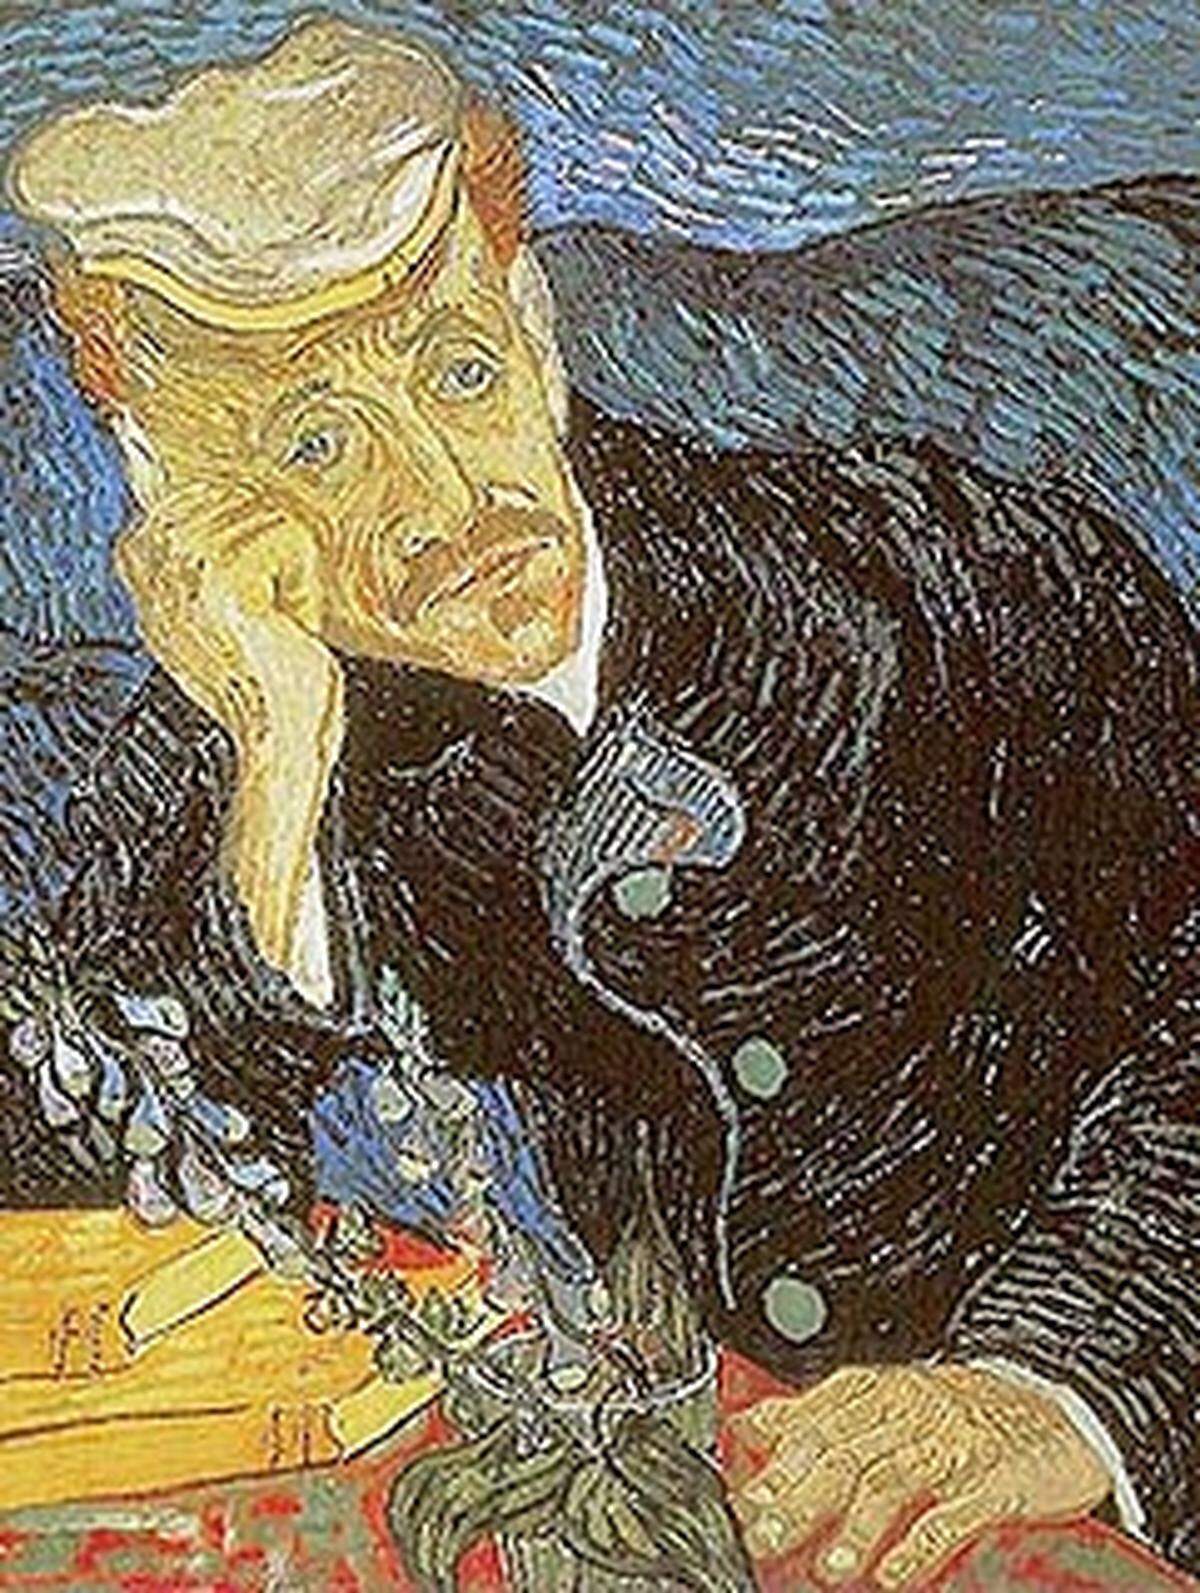 Mit dem "Portrait des Dr. Gachet" kommt der Maler Vincent van Gogh auf Platz acht der teuersten Bilder. Das 1890 entstandene Werk zeigt den Arzt des Künstlers und wurde für 82,5 Millionen Dollar verkauft. Wenige Wochen nach Fertigstellung des Gemäldes schoss sich Van Gogh selbst in die Brust. In seinen letzten Stunden war der porträtierte Doktor bei ihm. Da die Kugel nicht entfernt werden konnte, versuchte er zumindest die Schmerzen des Malers zu lindern.